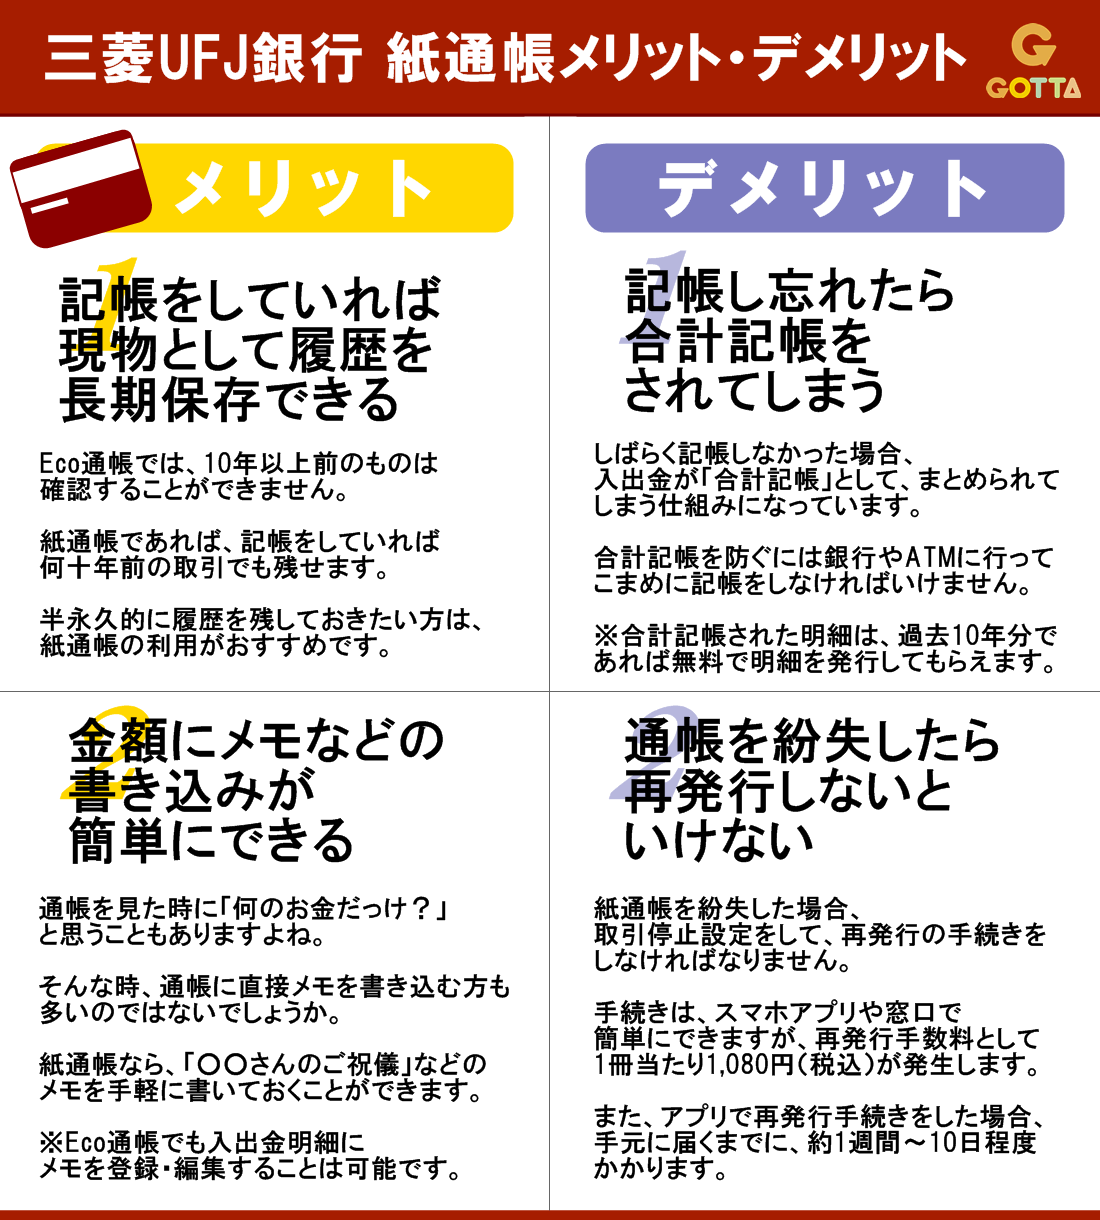 通帳 ネット 三菱 銀行 ufj